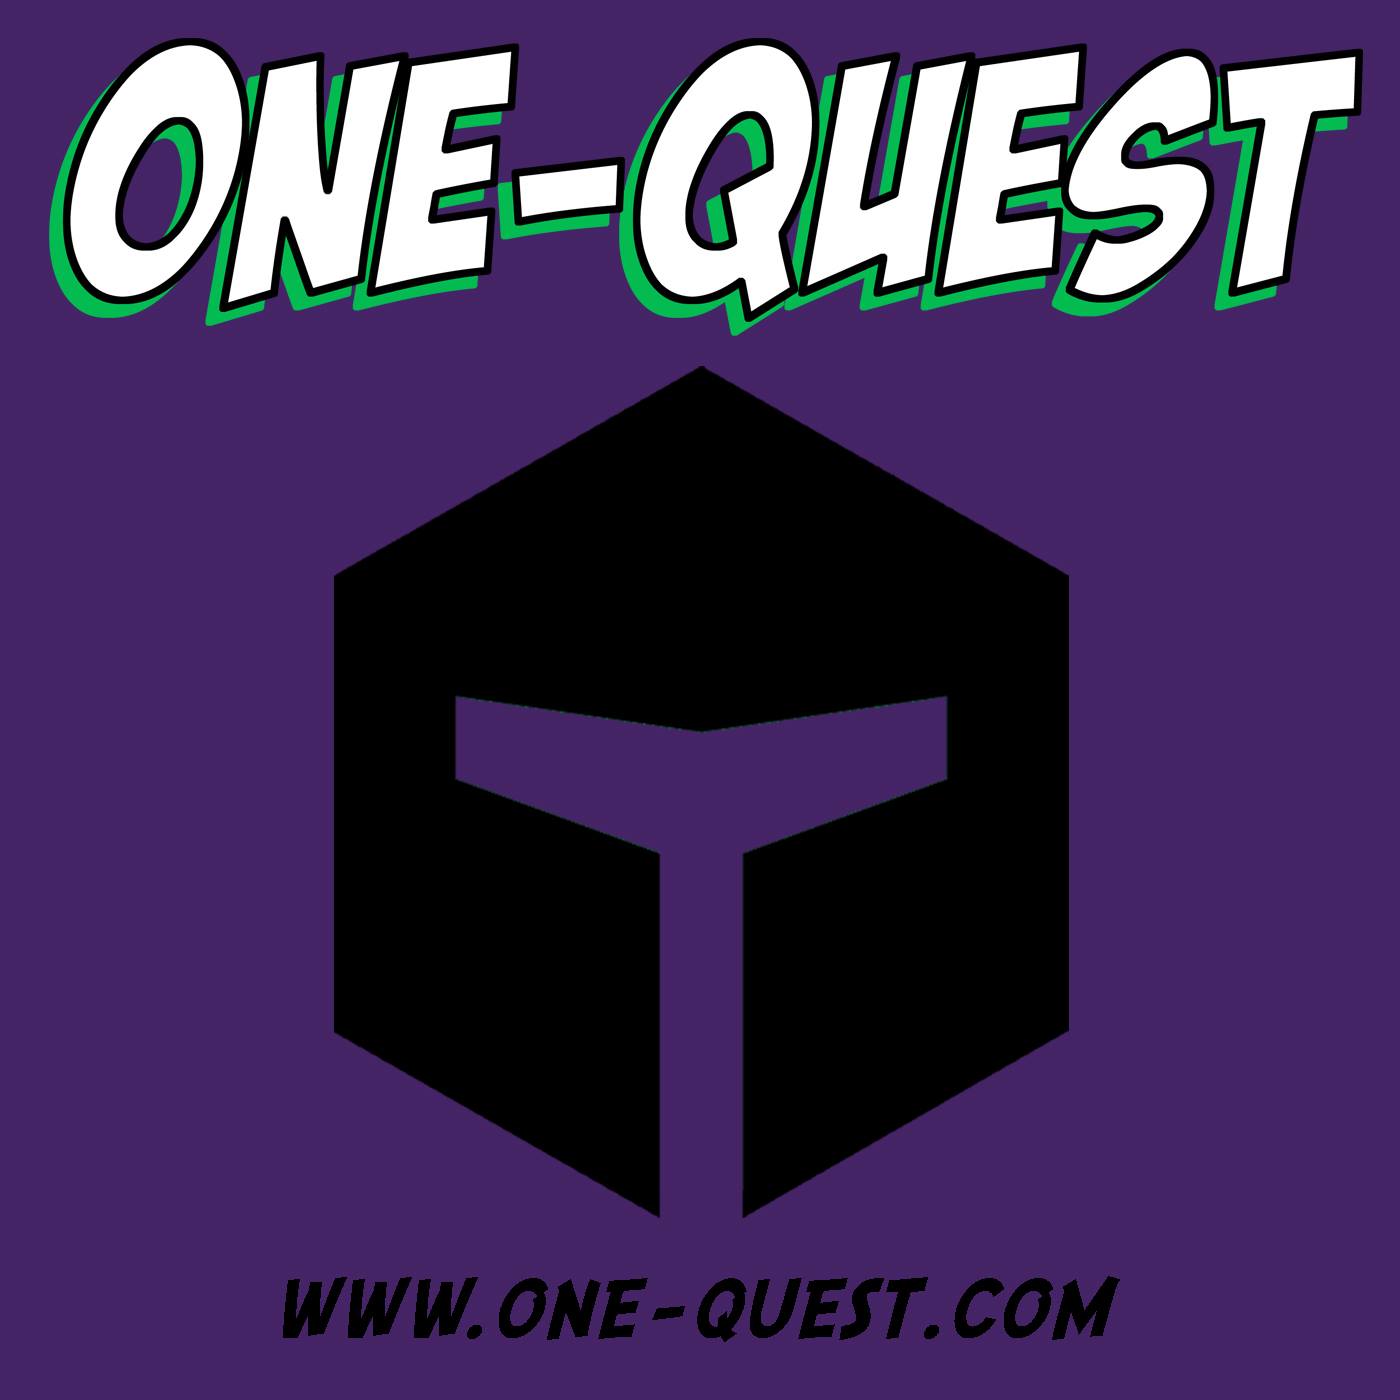 (c) One-quest.com